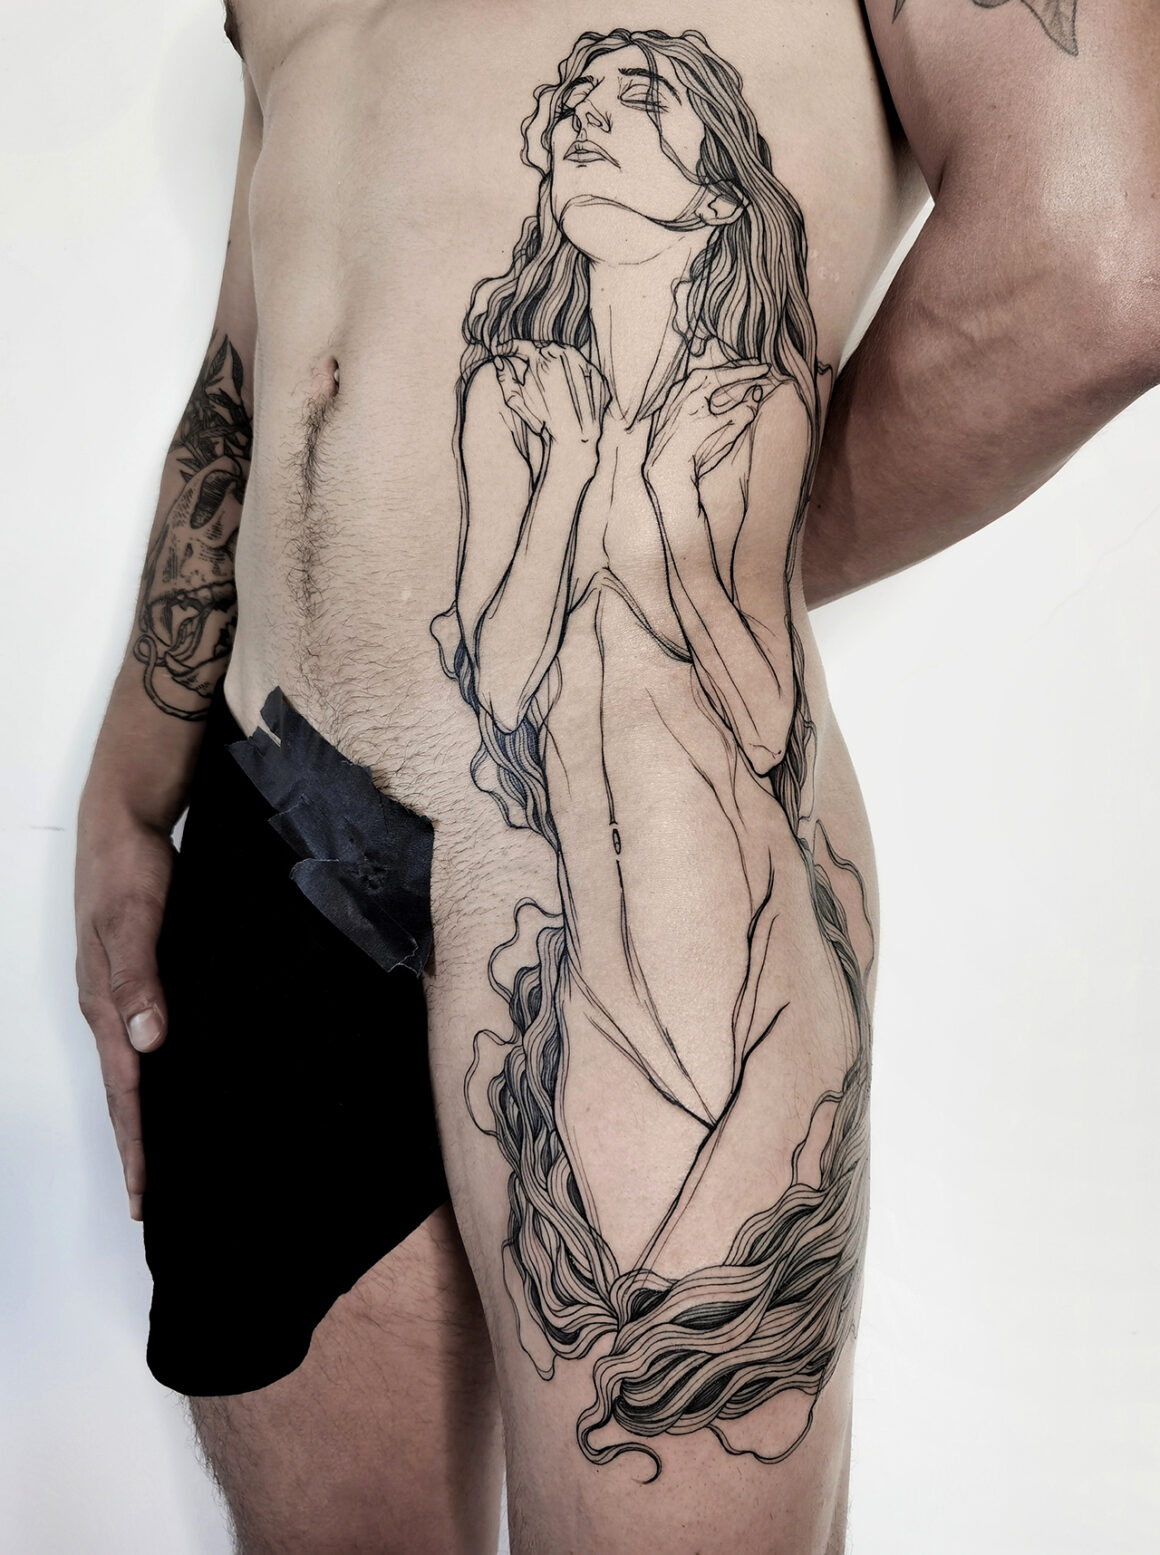 Tattoo by Nicolas Agus, @nicolasagus15